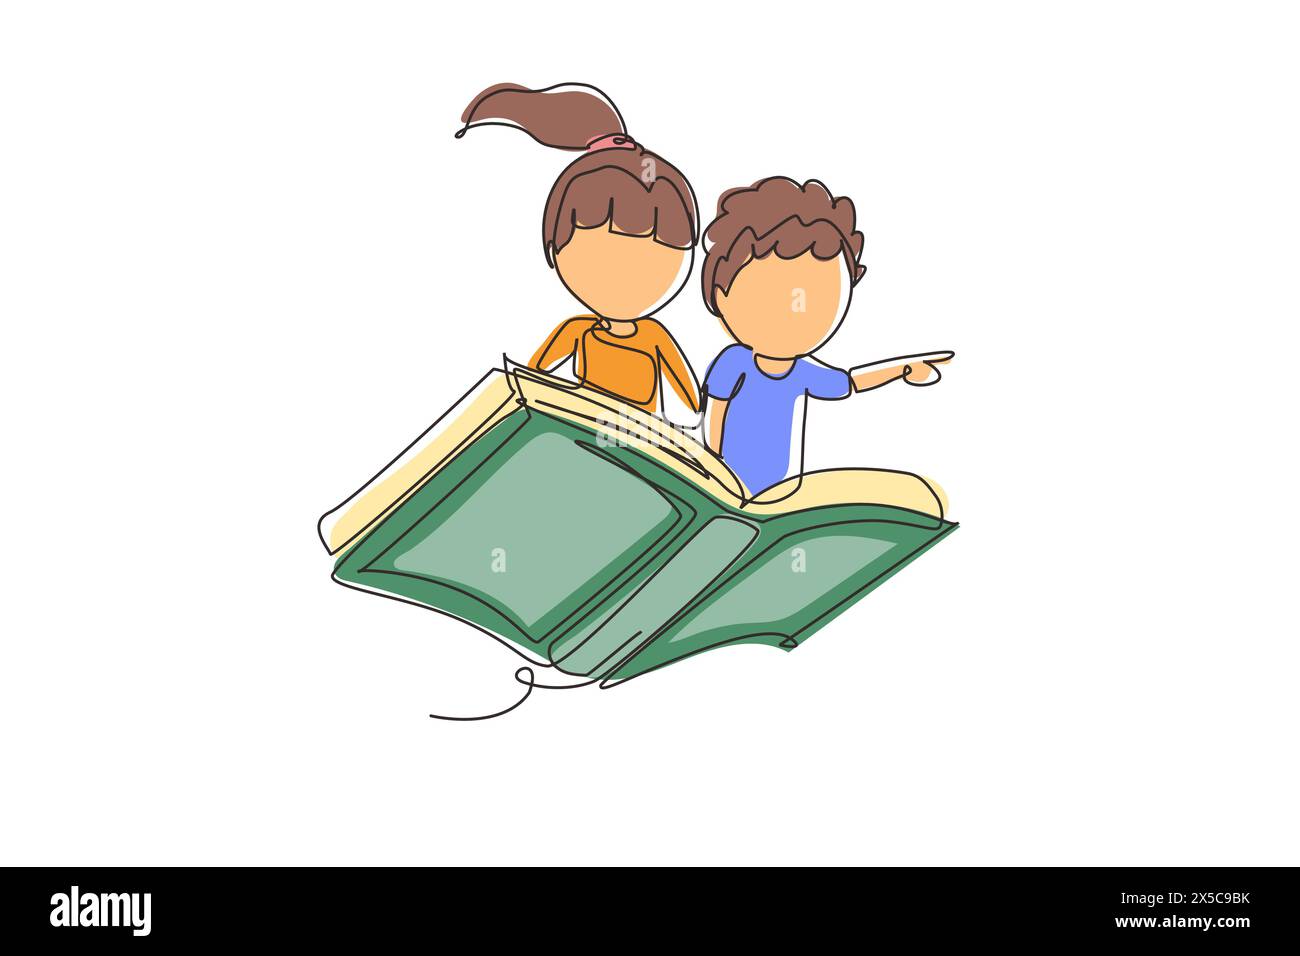 Una sola linea disegna un bambino e una ragazza, uno studente o un bambino in età prescolare che vola su un libro magico. Ragazzi felici che volano sul libro. Concetto di potere della conoscenza. Conti Illustrazione Vettoriale